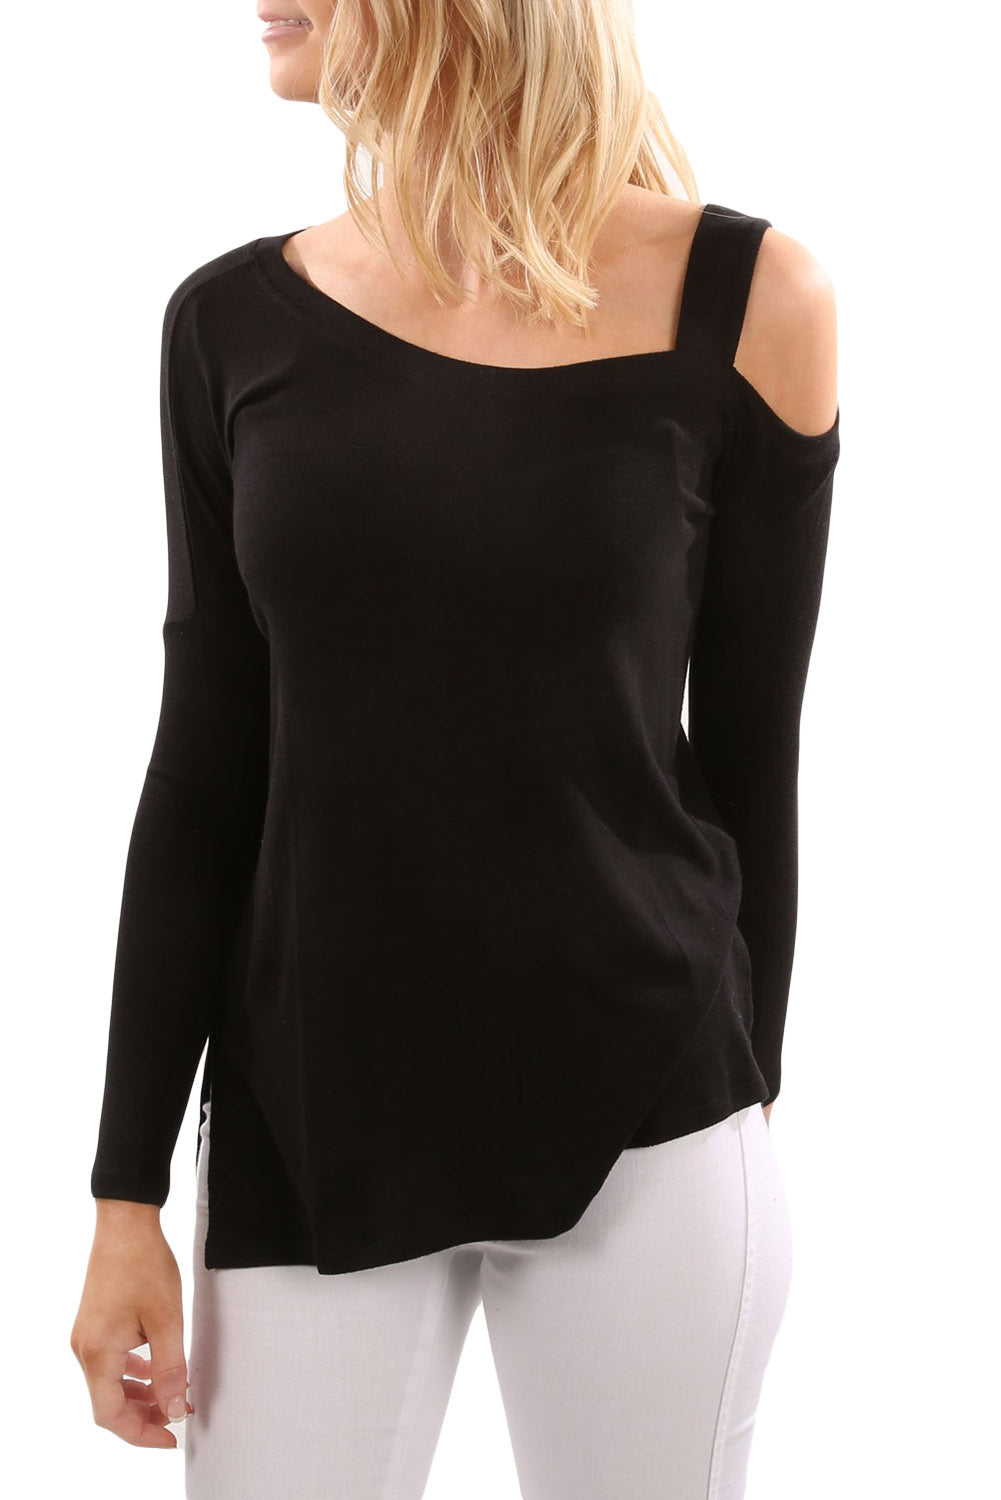 black-one shoulder top-open shoulder top-cold shoulder-long sleeve-knit top